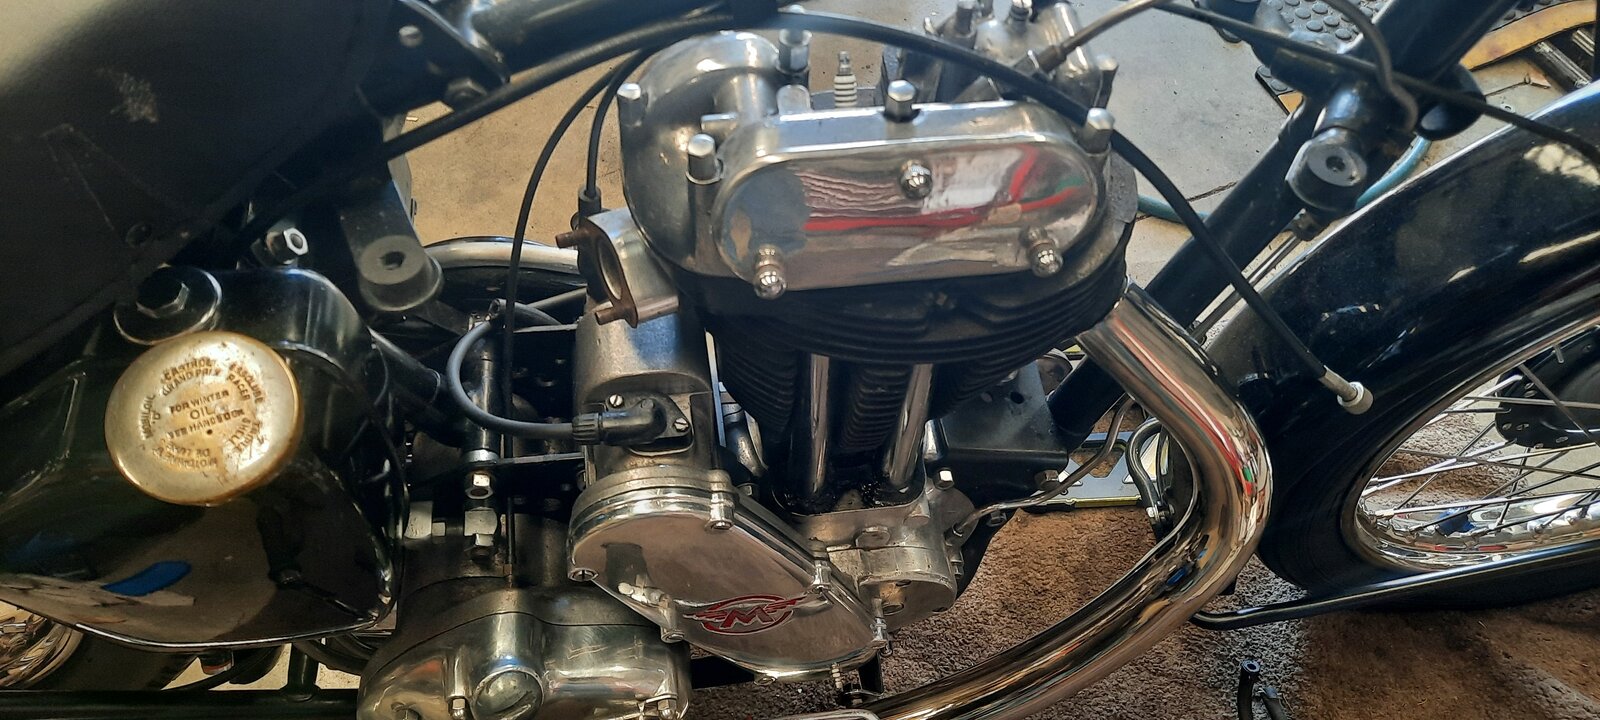 Reworking 1960 G3 cylinder head